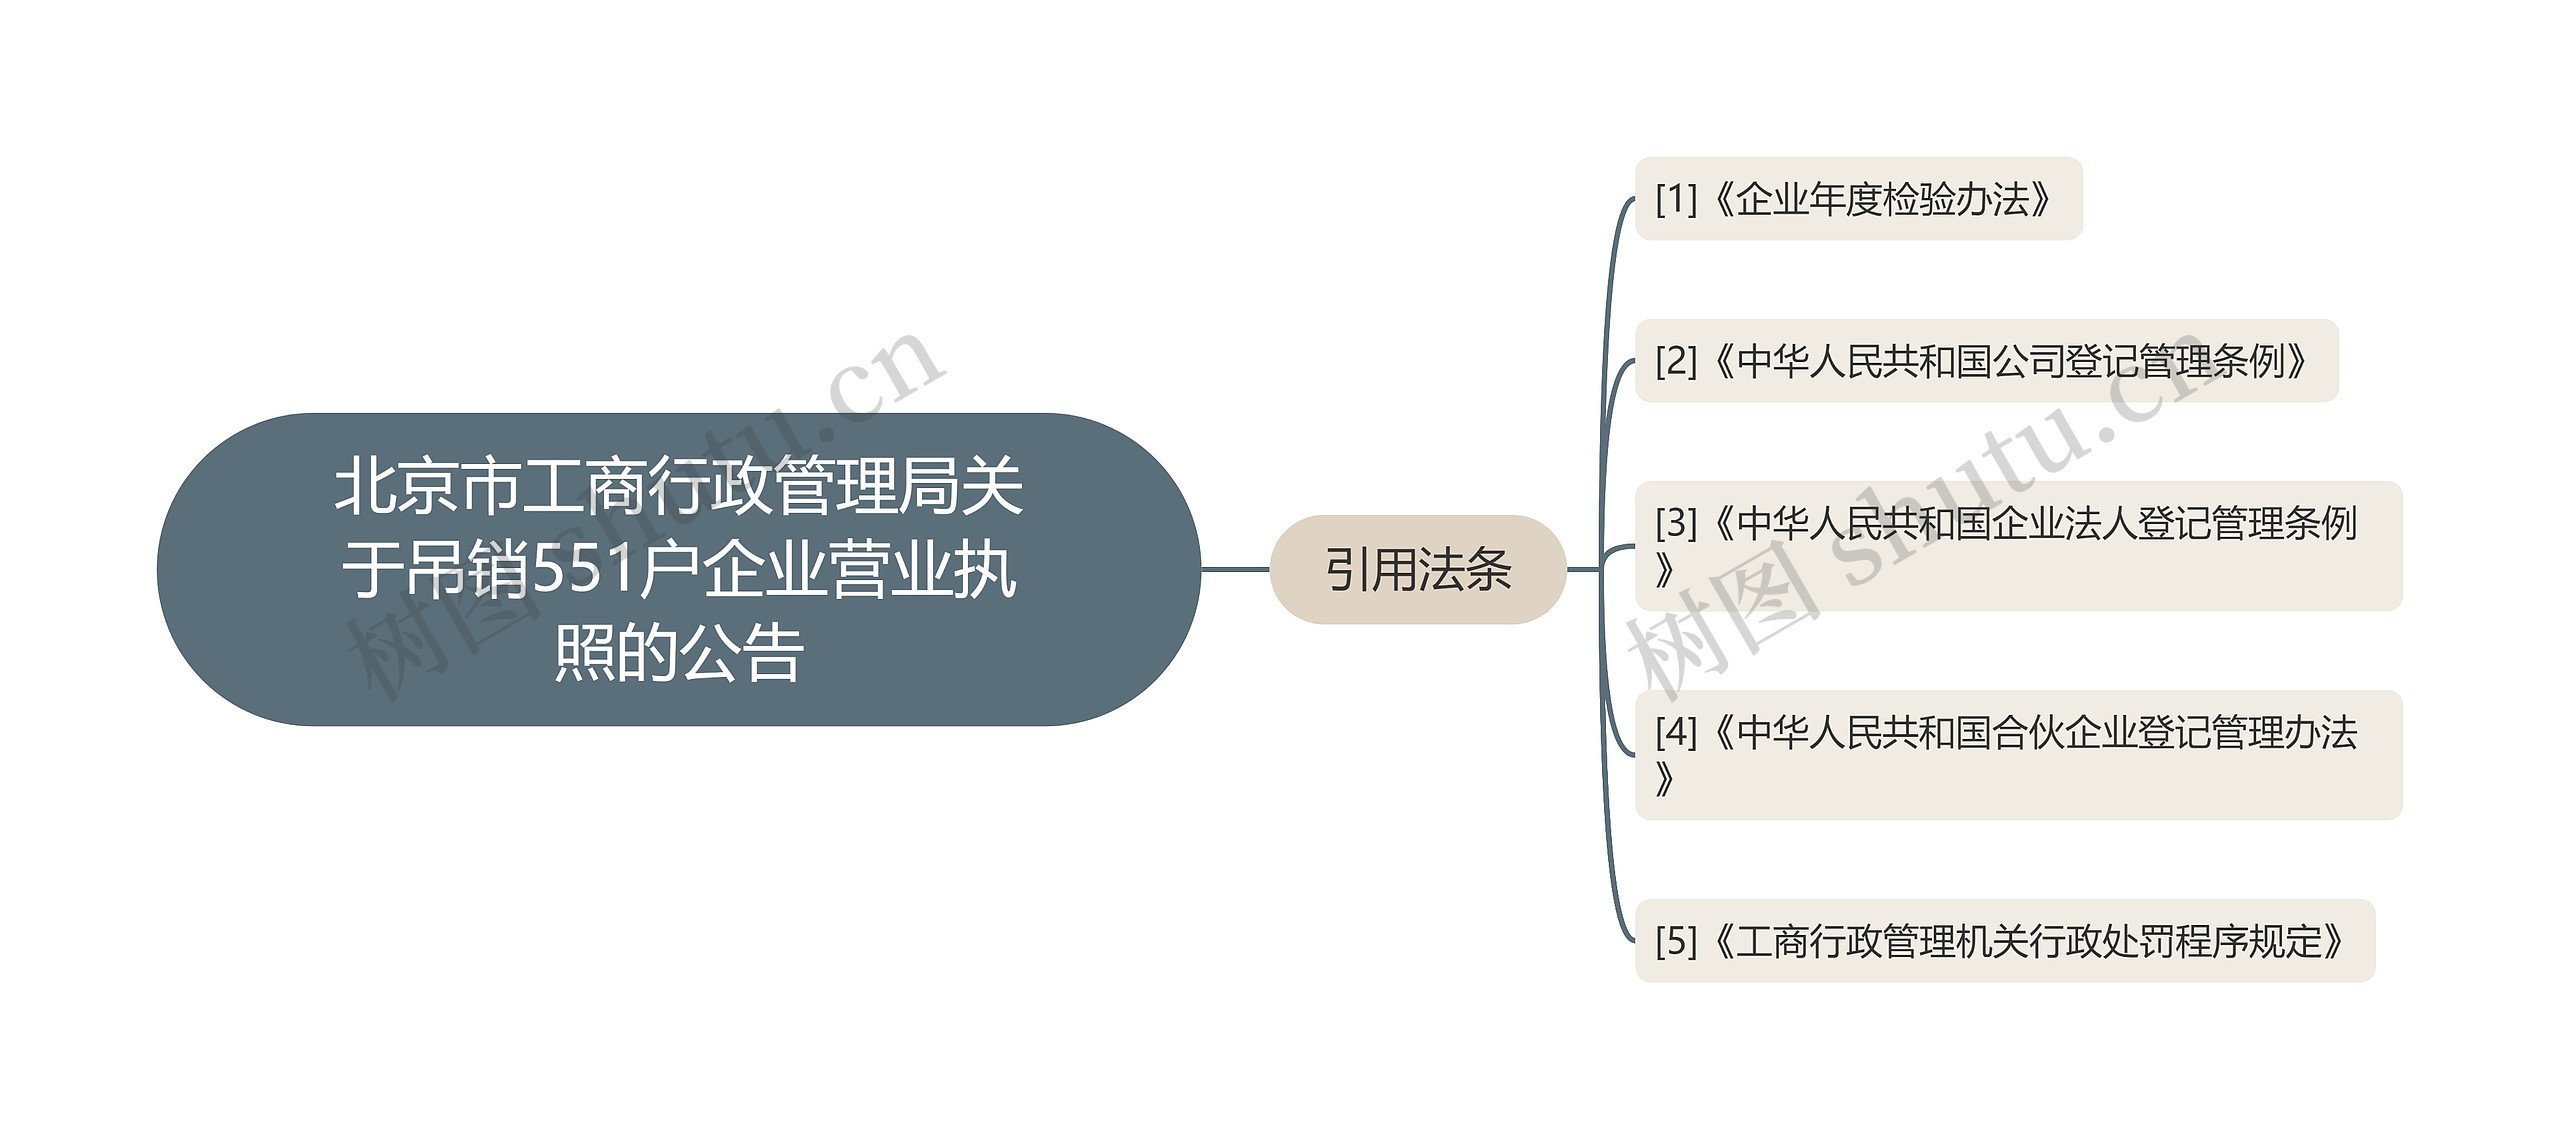 北京市工商行政管理局关于吊销551户企业营业执照的公告